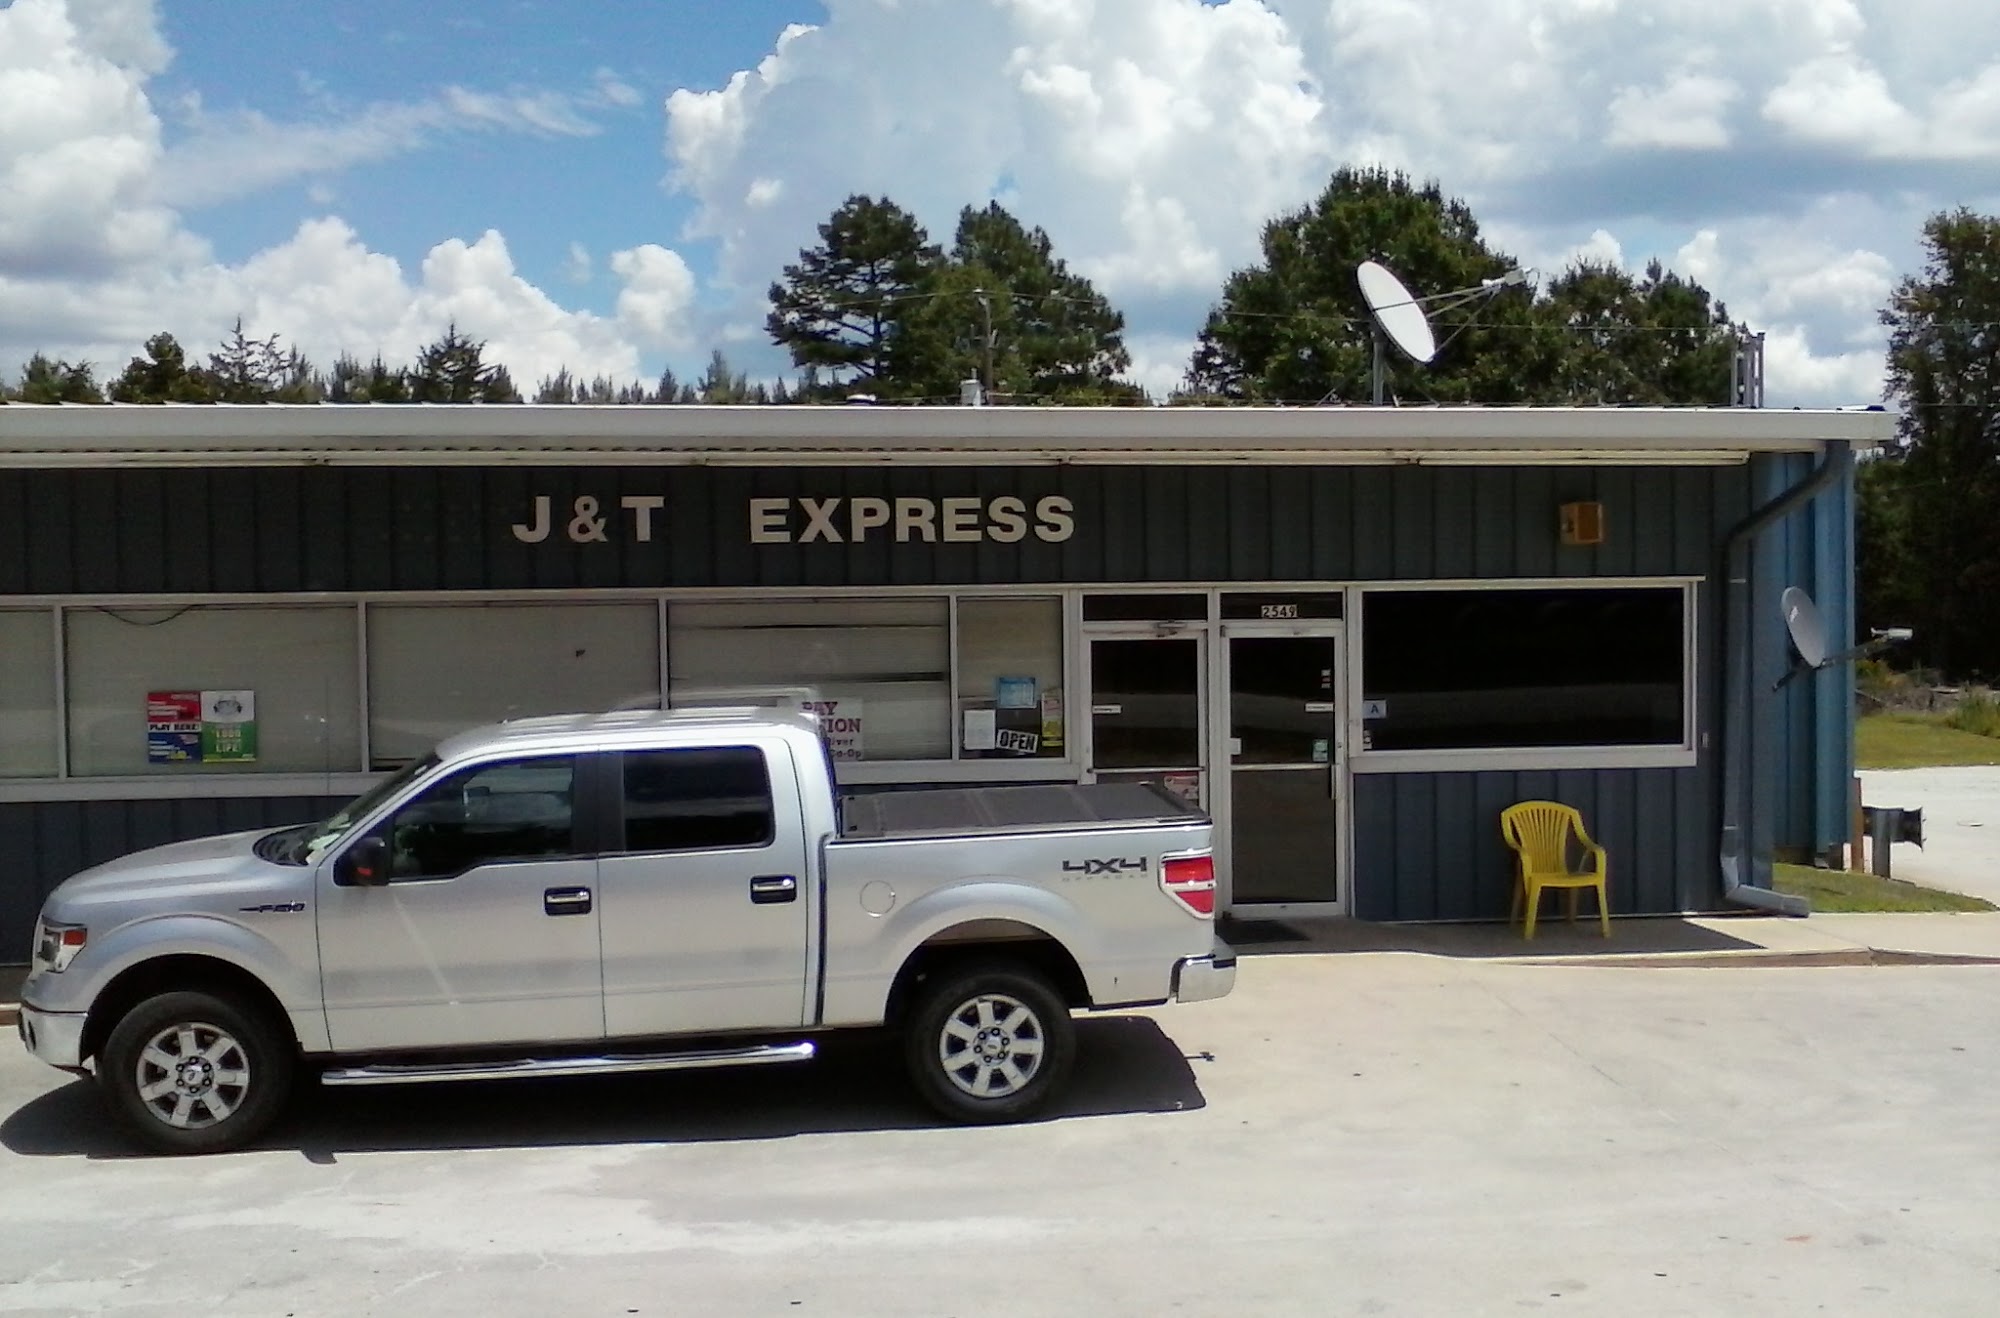 J & T Express